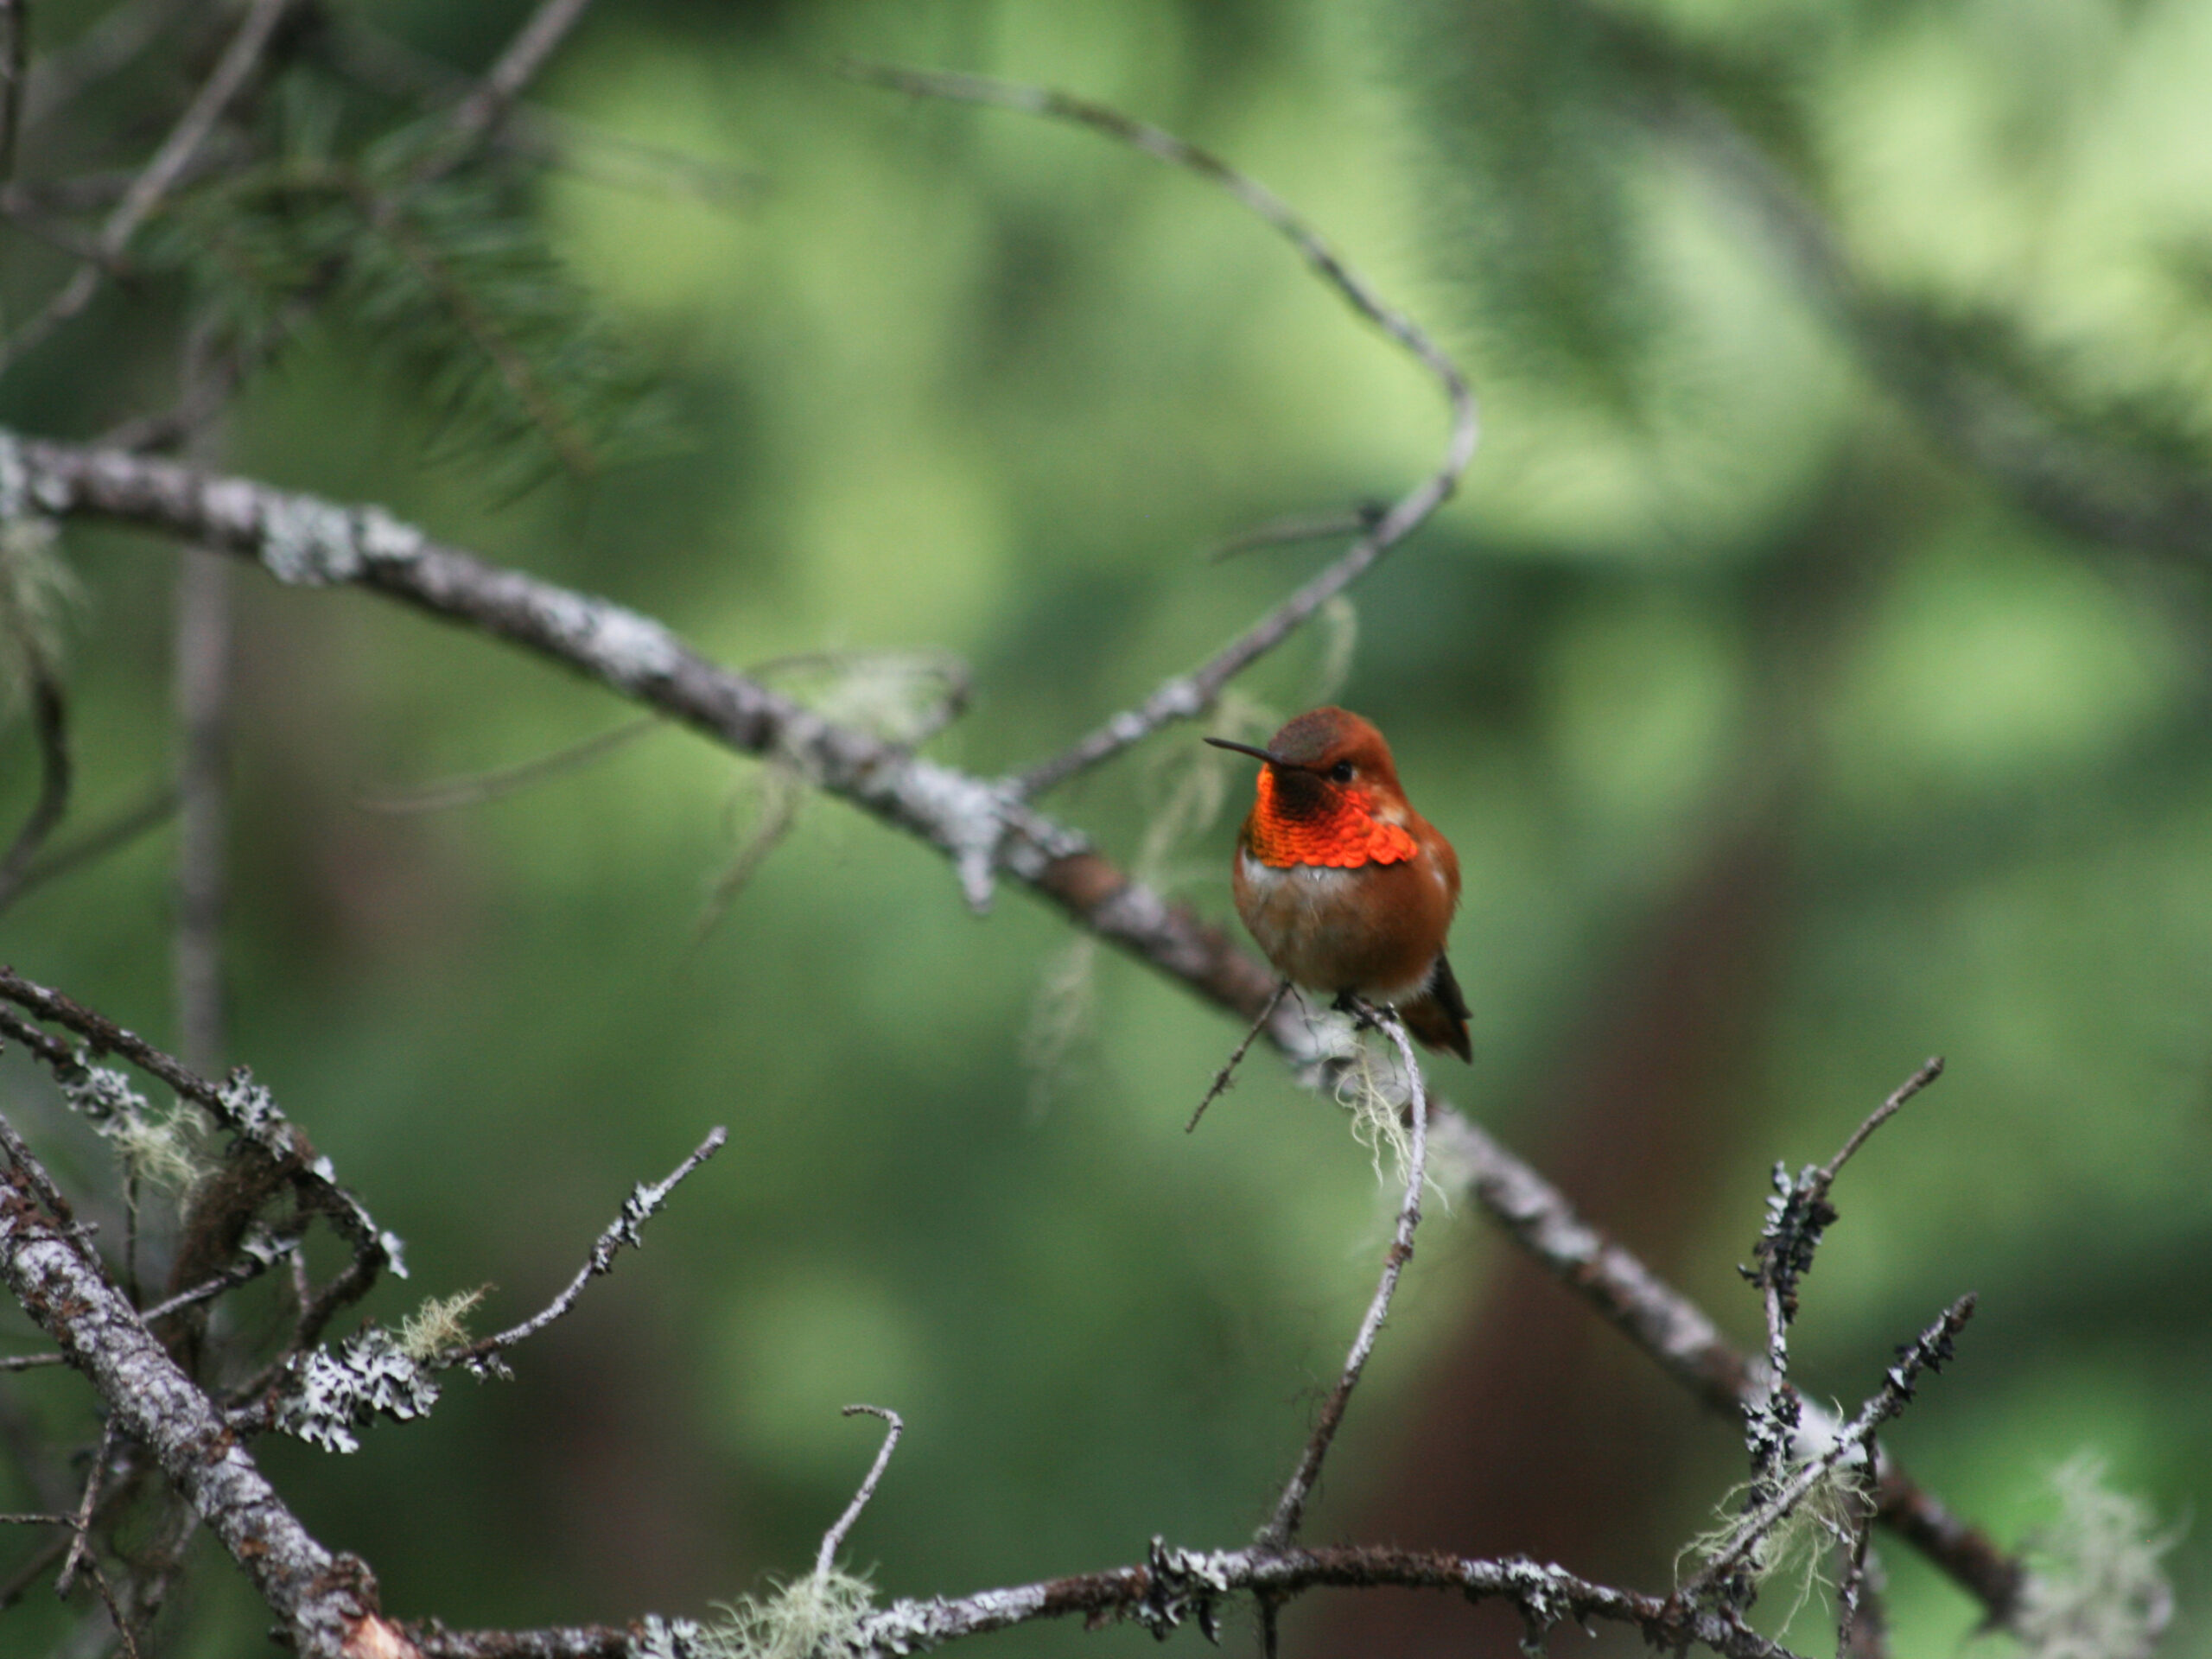 A hummingbird visitor at Cross River